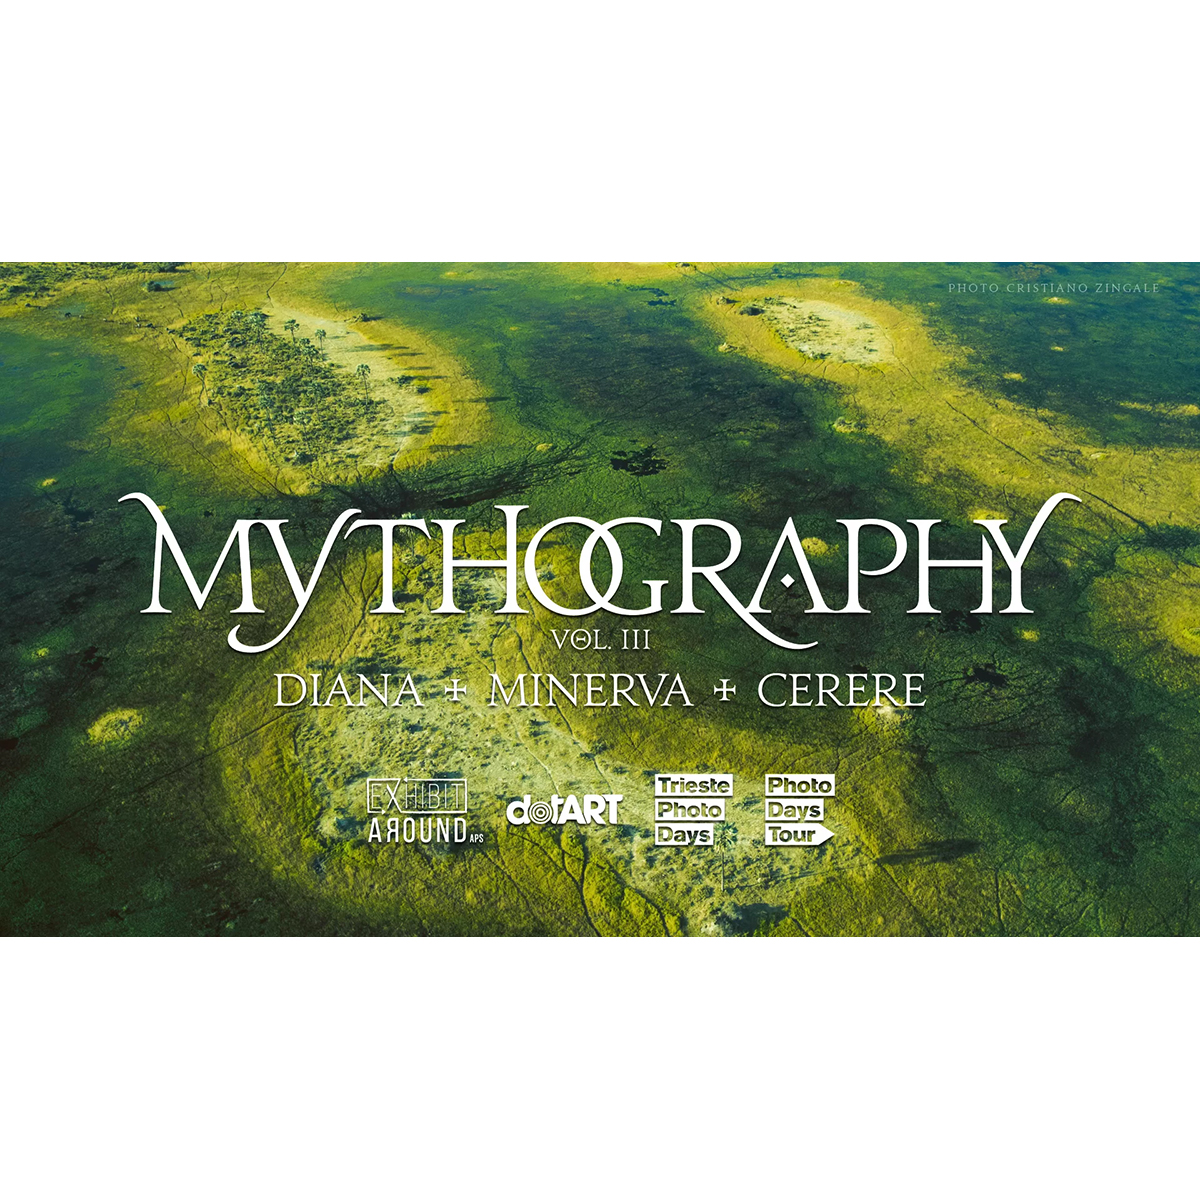 Mythography III: Diana / Minerva / Cerere